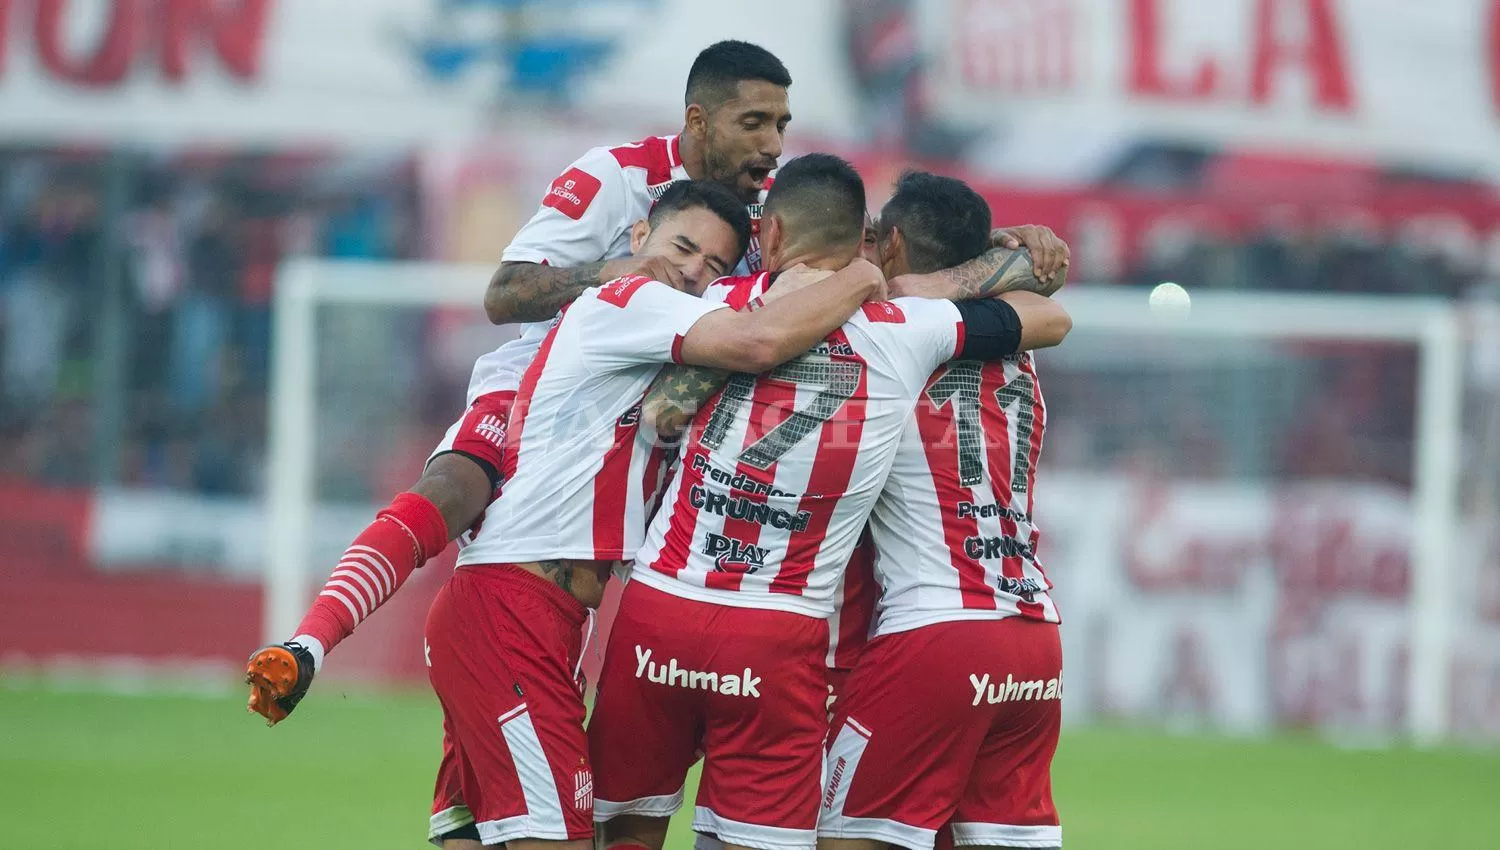 EL FESTEJO. Los jugadores abrazan a Espíndola, autor del gol de la victoria Santa.